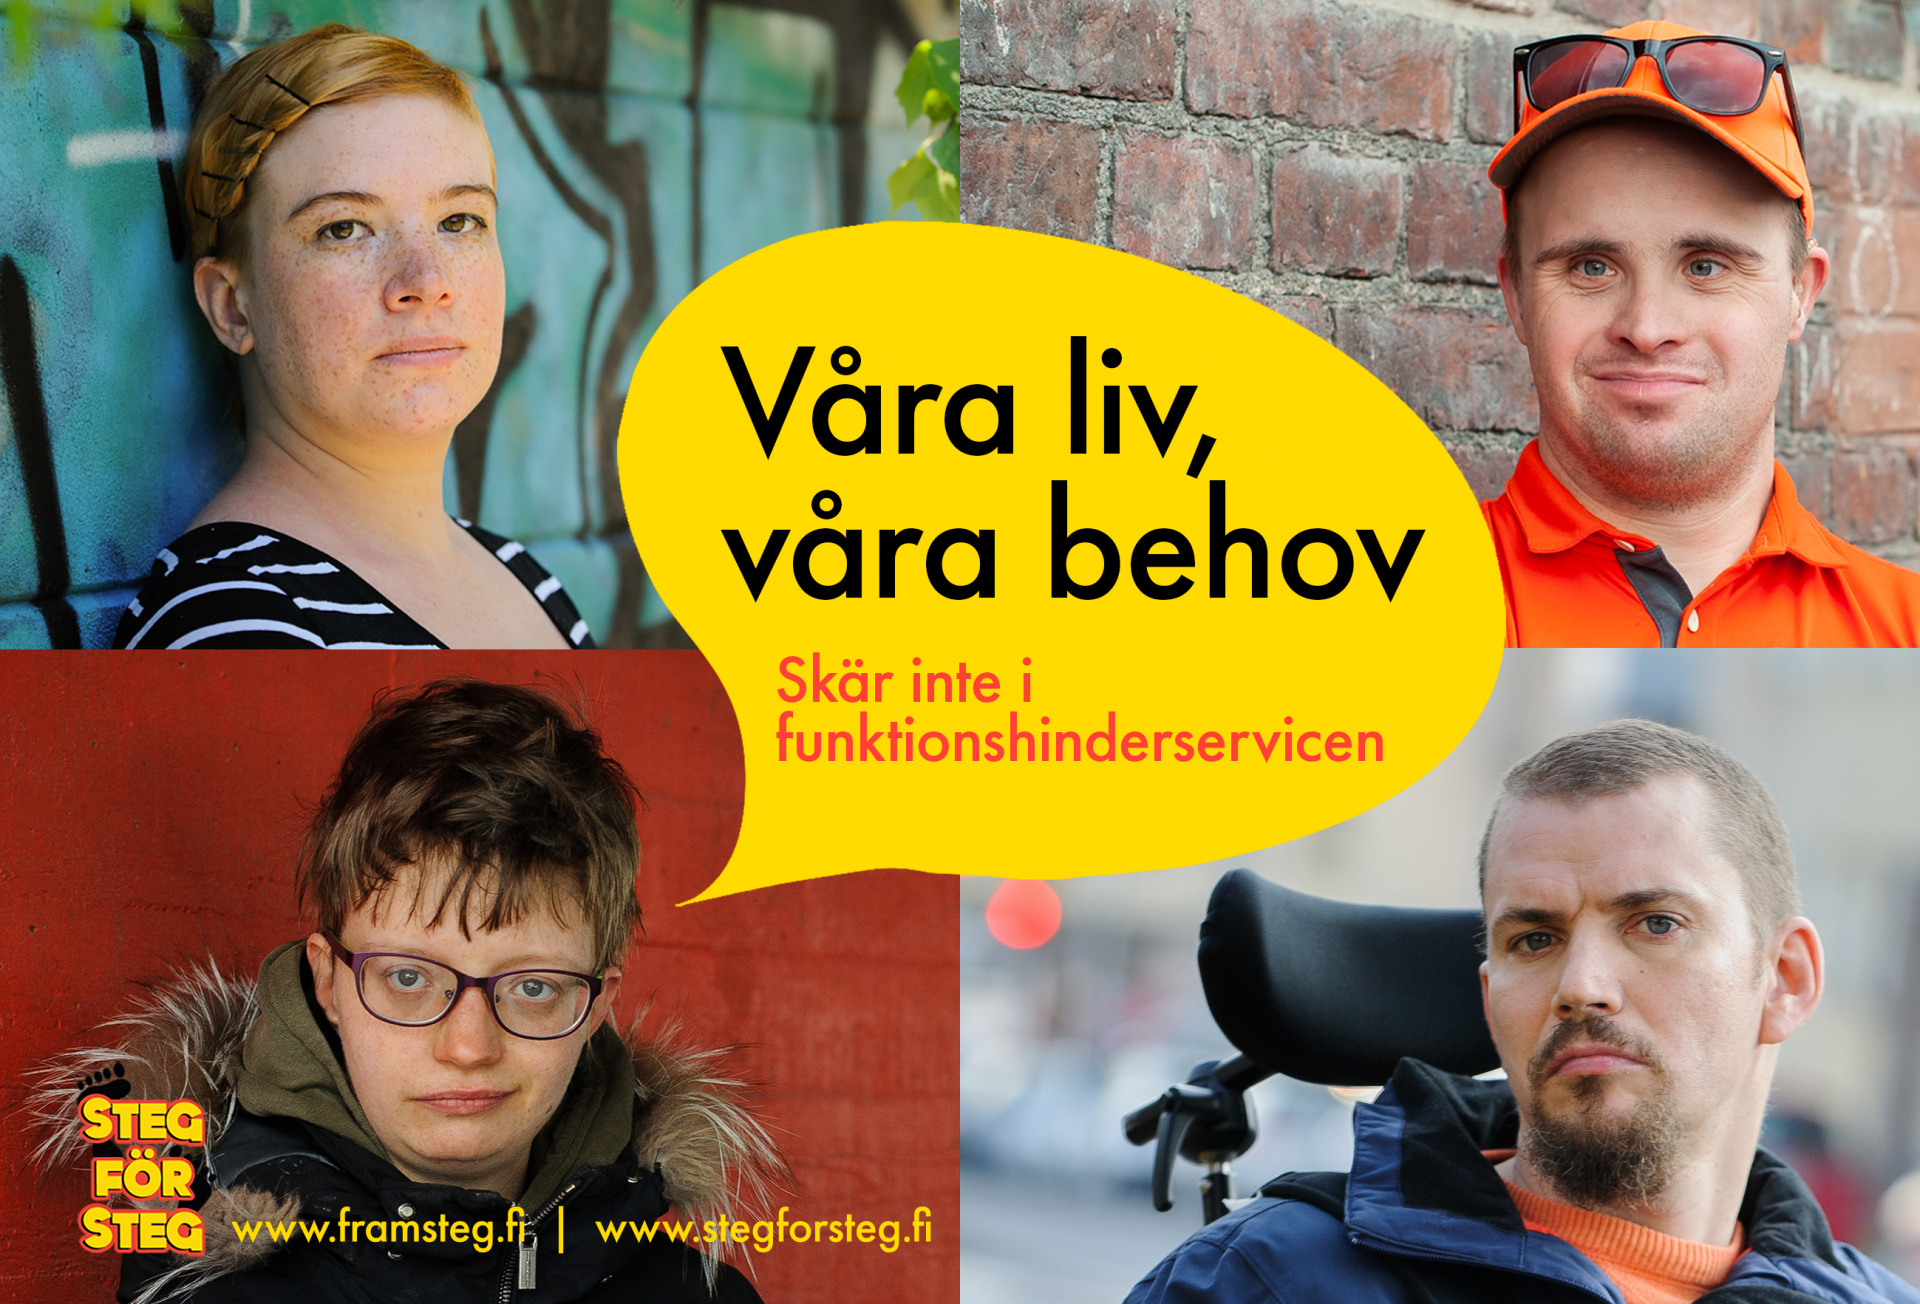 Kampanjbild på fyra ansikten av Steg för Steg medlemmar med en stor pratbubbla i mitten där det står "Våra liv, våra behov! Skär inte i funktionshinderservicen".